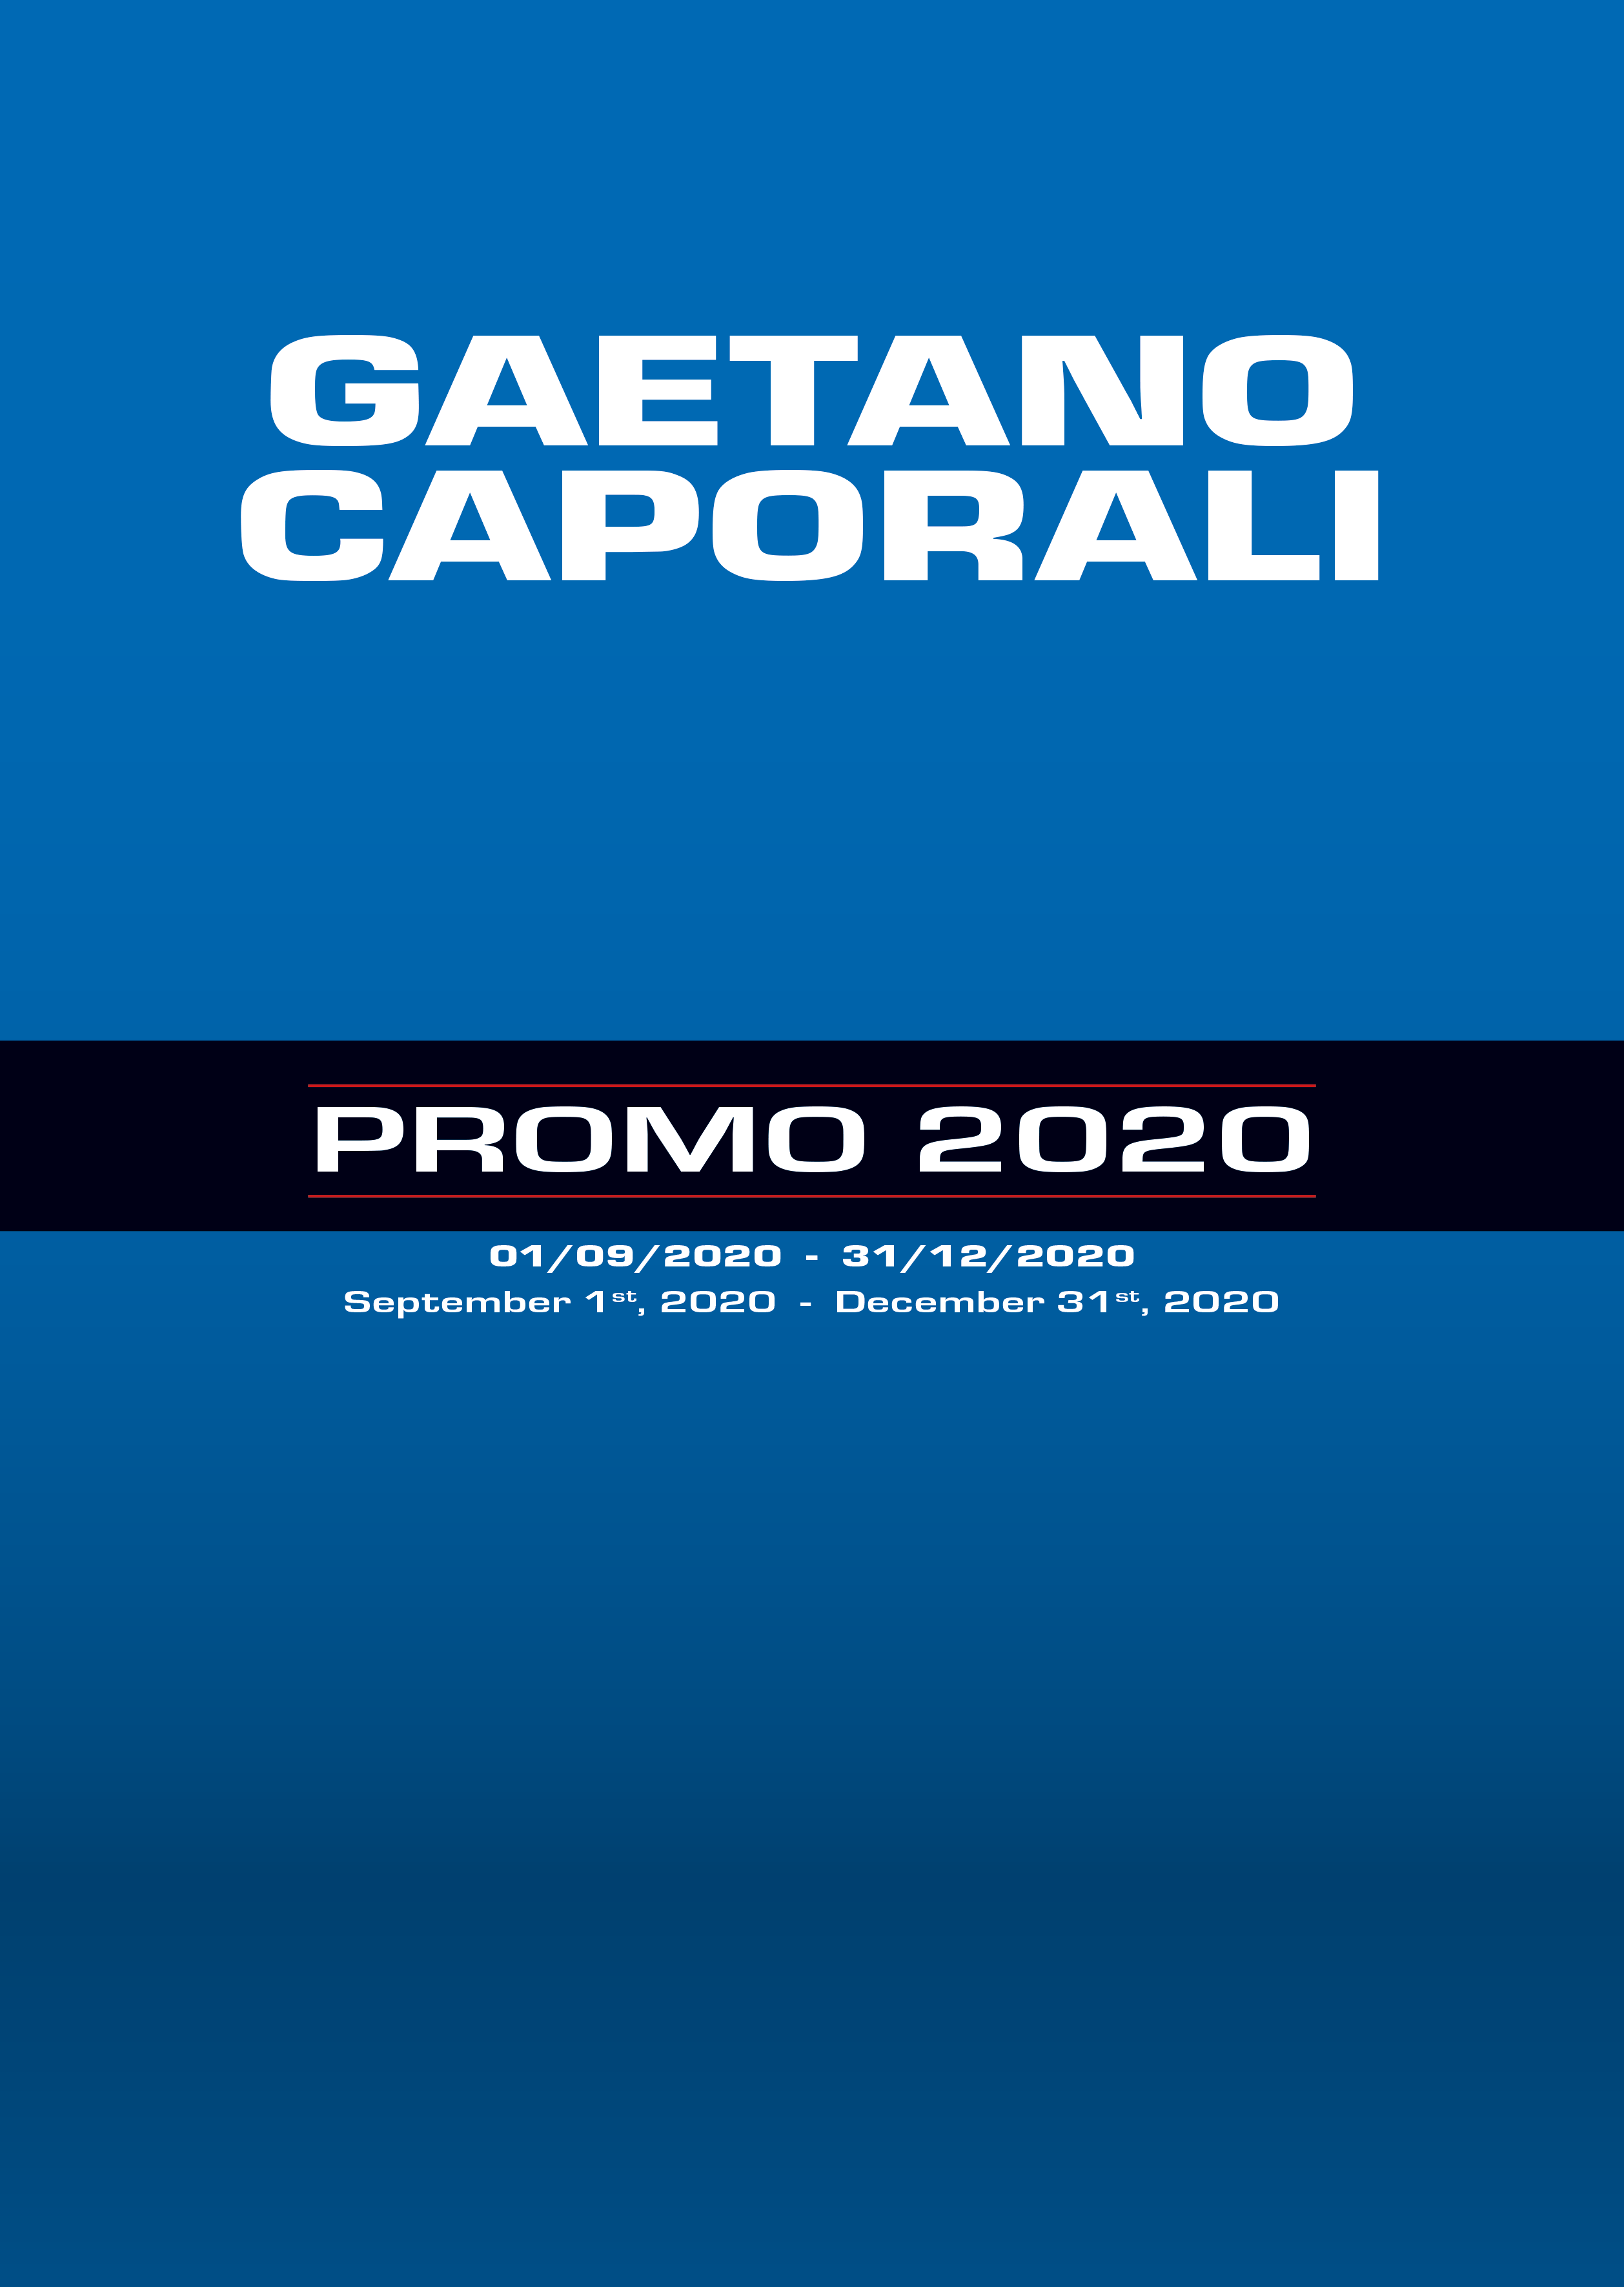 Gaetano_Caporali_Promo_2020_Ramico_Strumenti_Misura_Torino